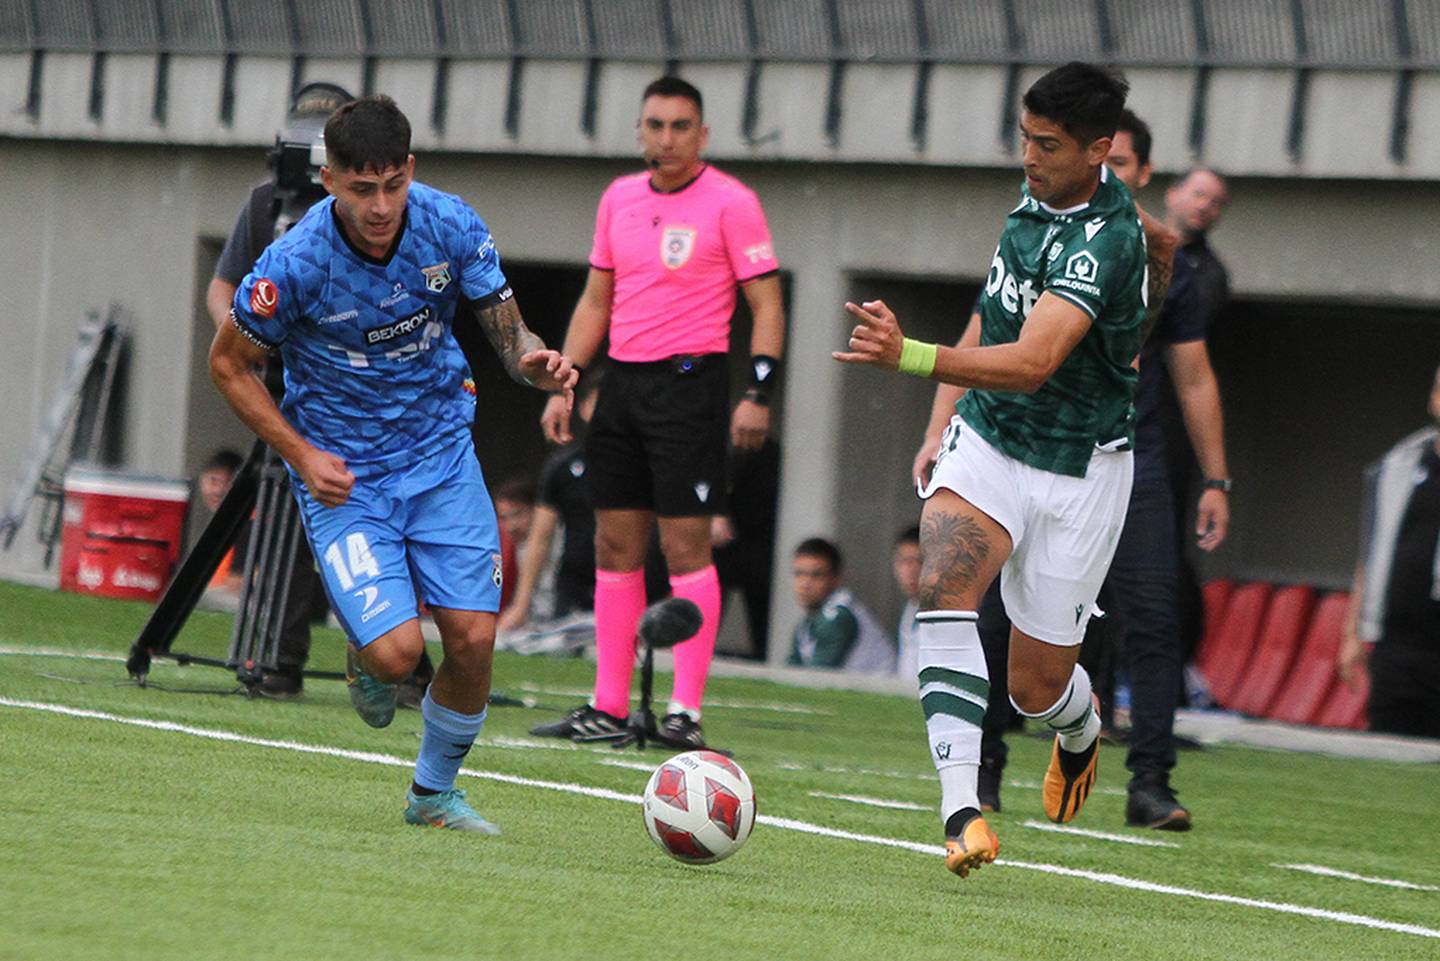 Santiago Wanderers vs San Marcos de Arica, disputado en el estadio Nicolás Chahuán Nazar.